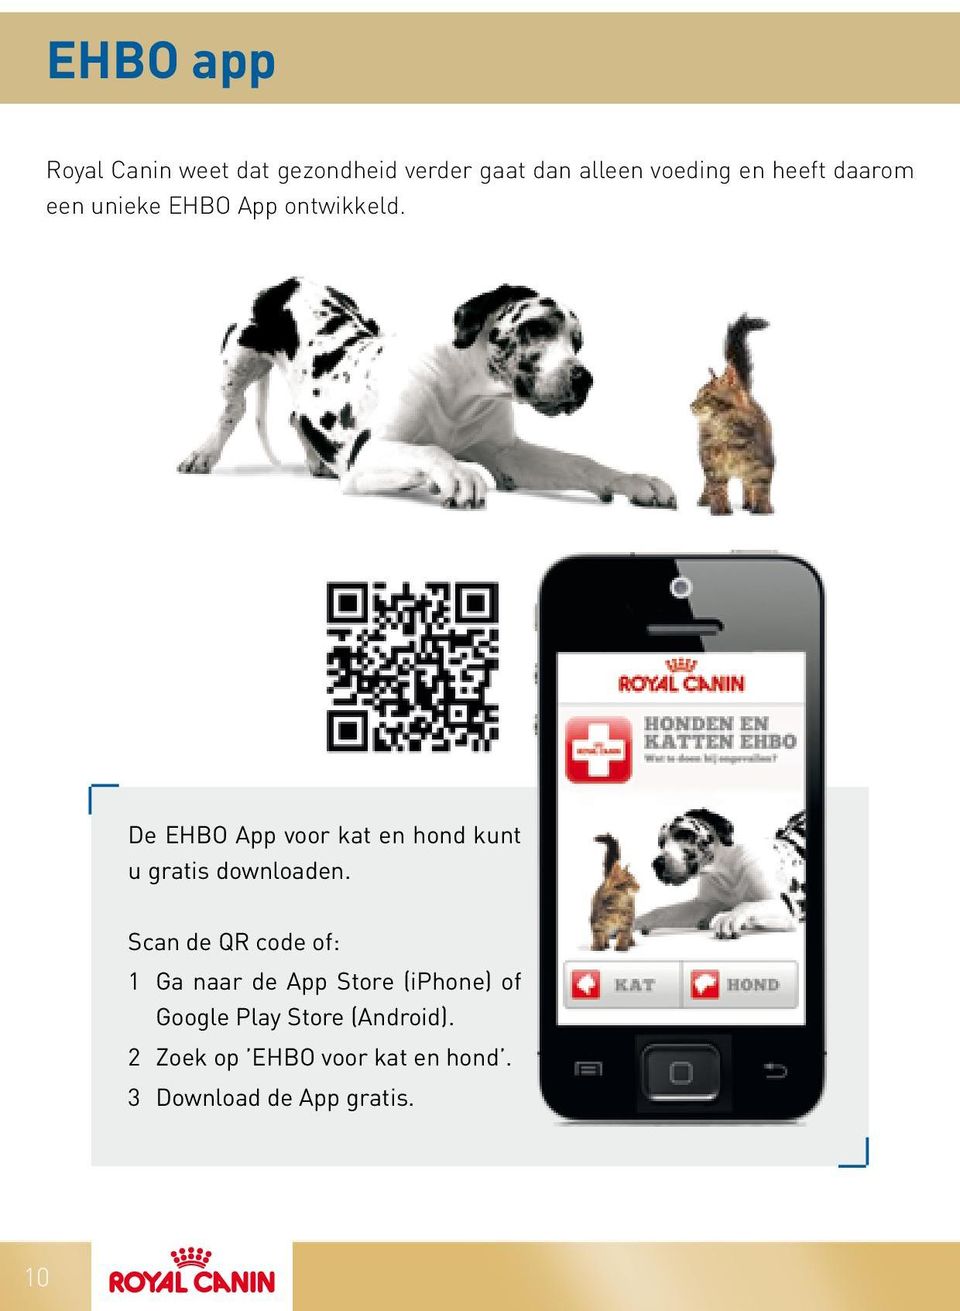 De EHBO App voor kat en hond kunt u gratis downloaden.